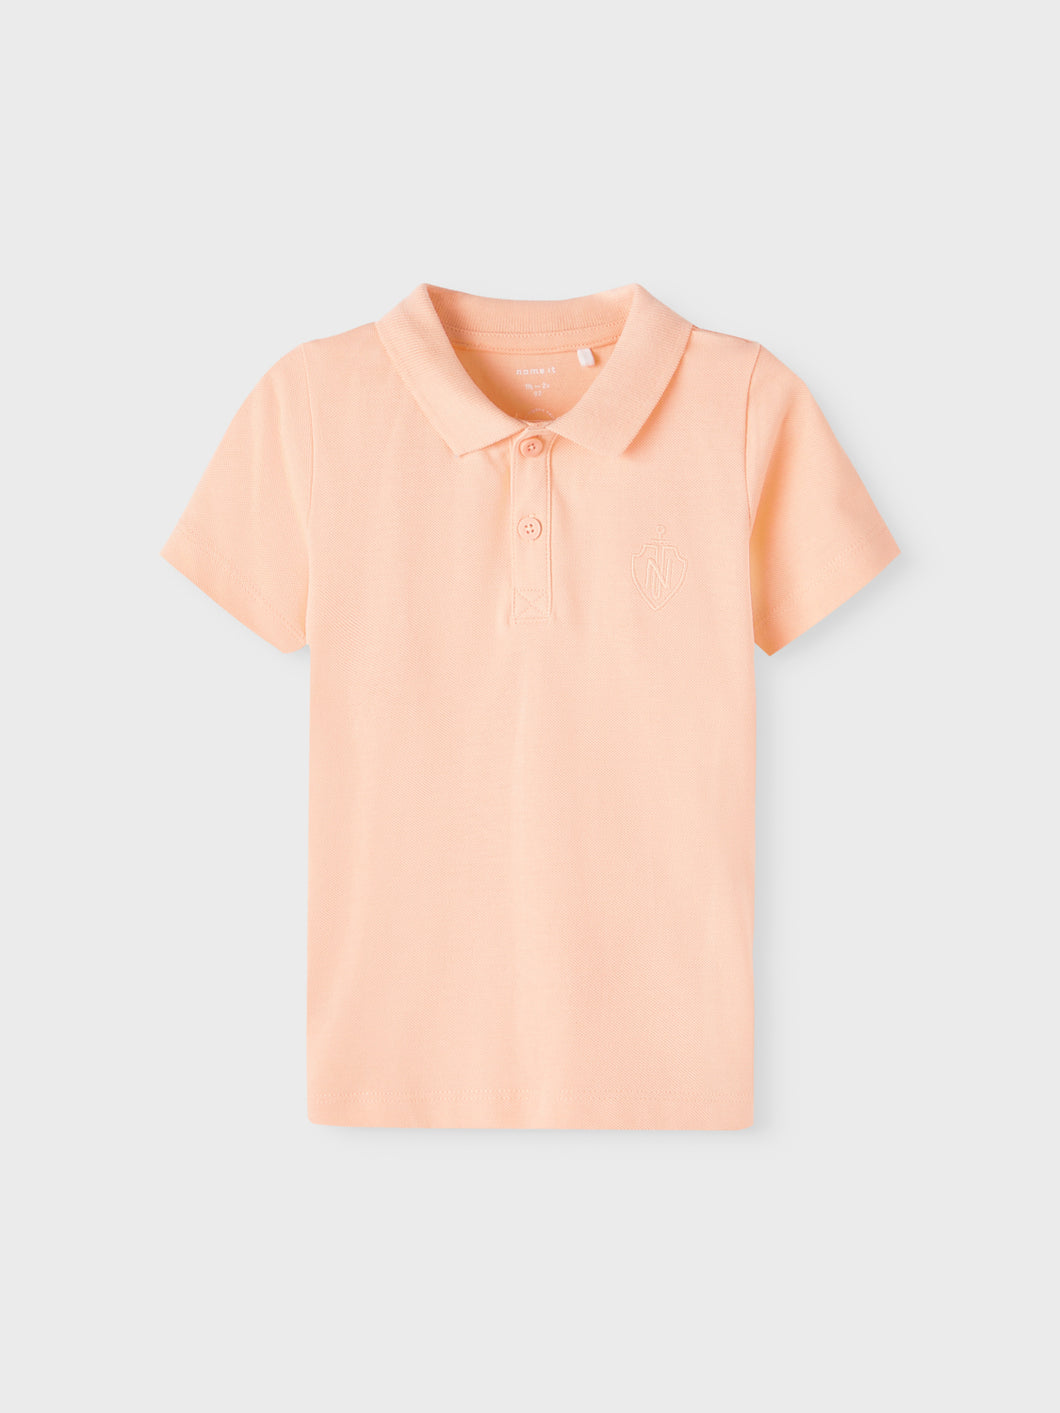 NMMFRITS T-Shirts & Tops - Peach Nectar